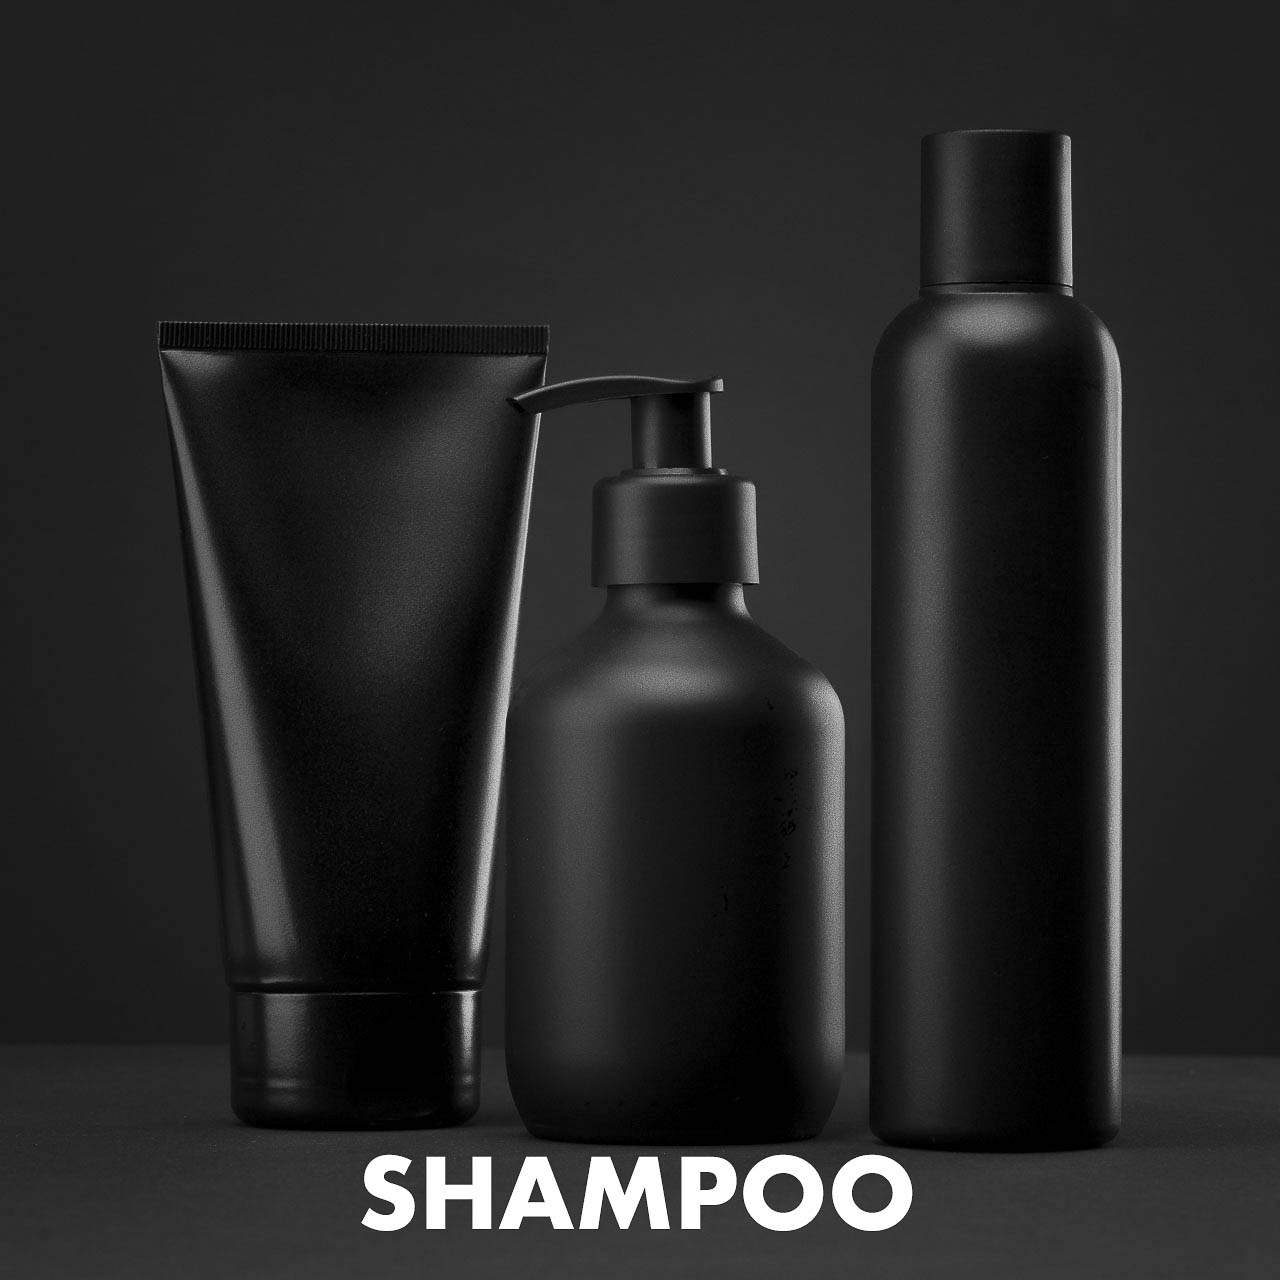 Ein Shampoo von blackbeards.